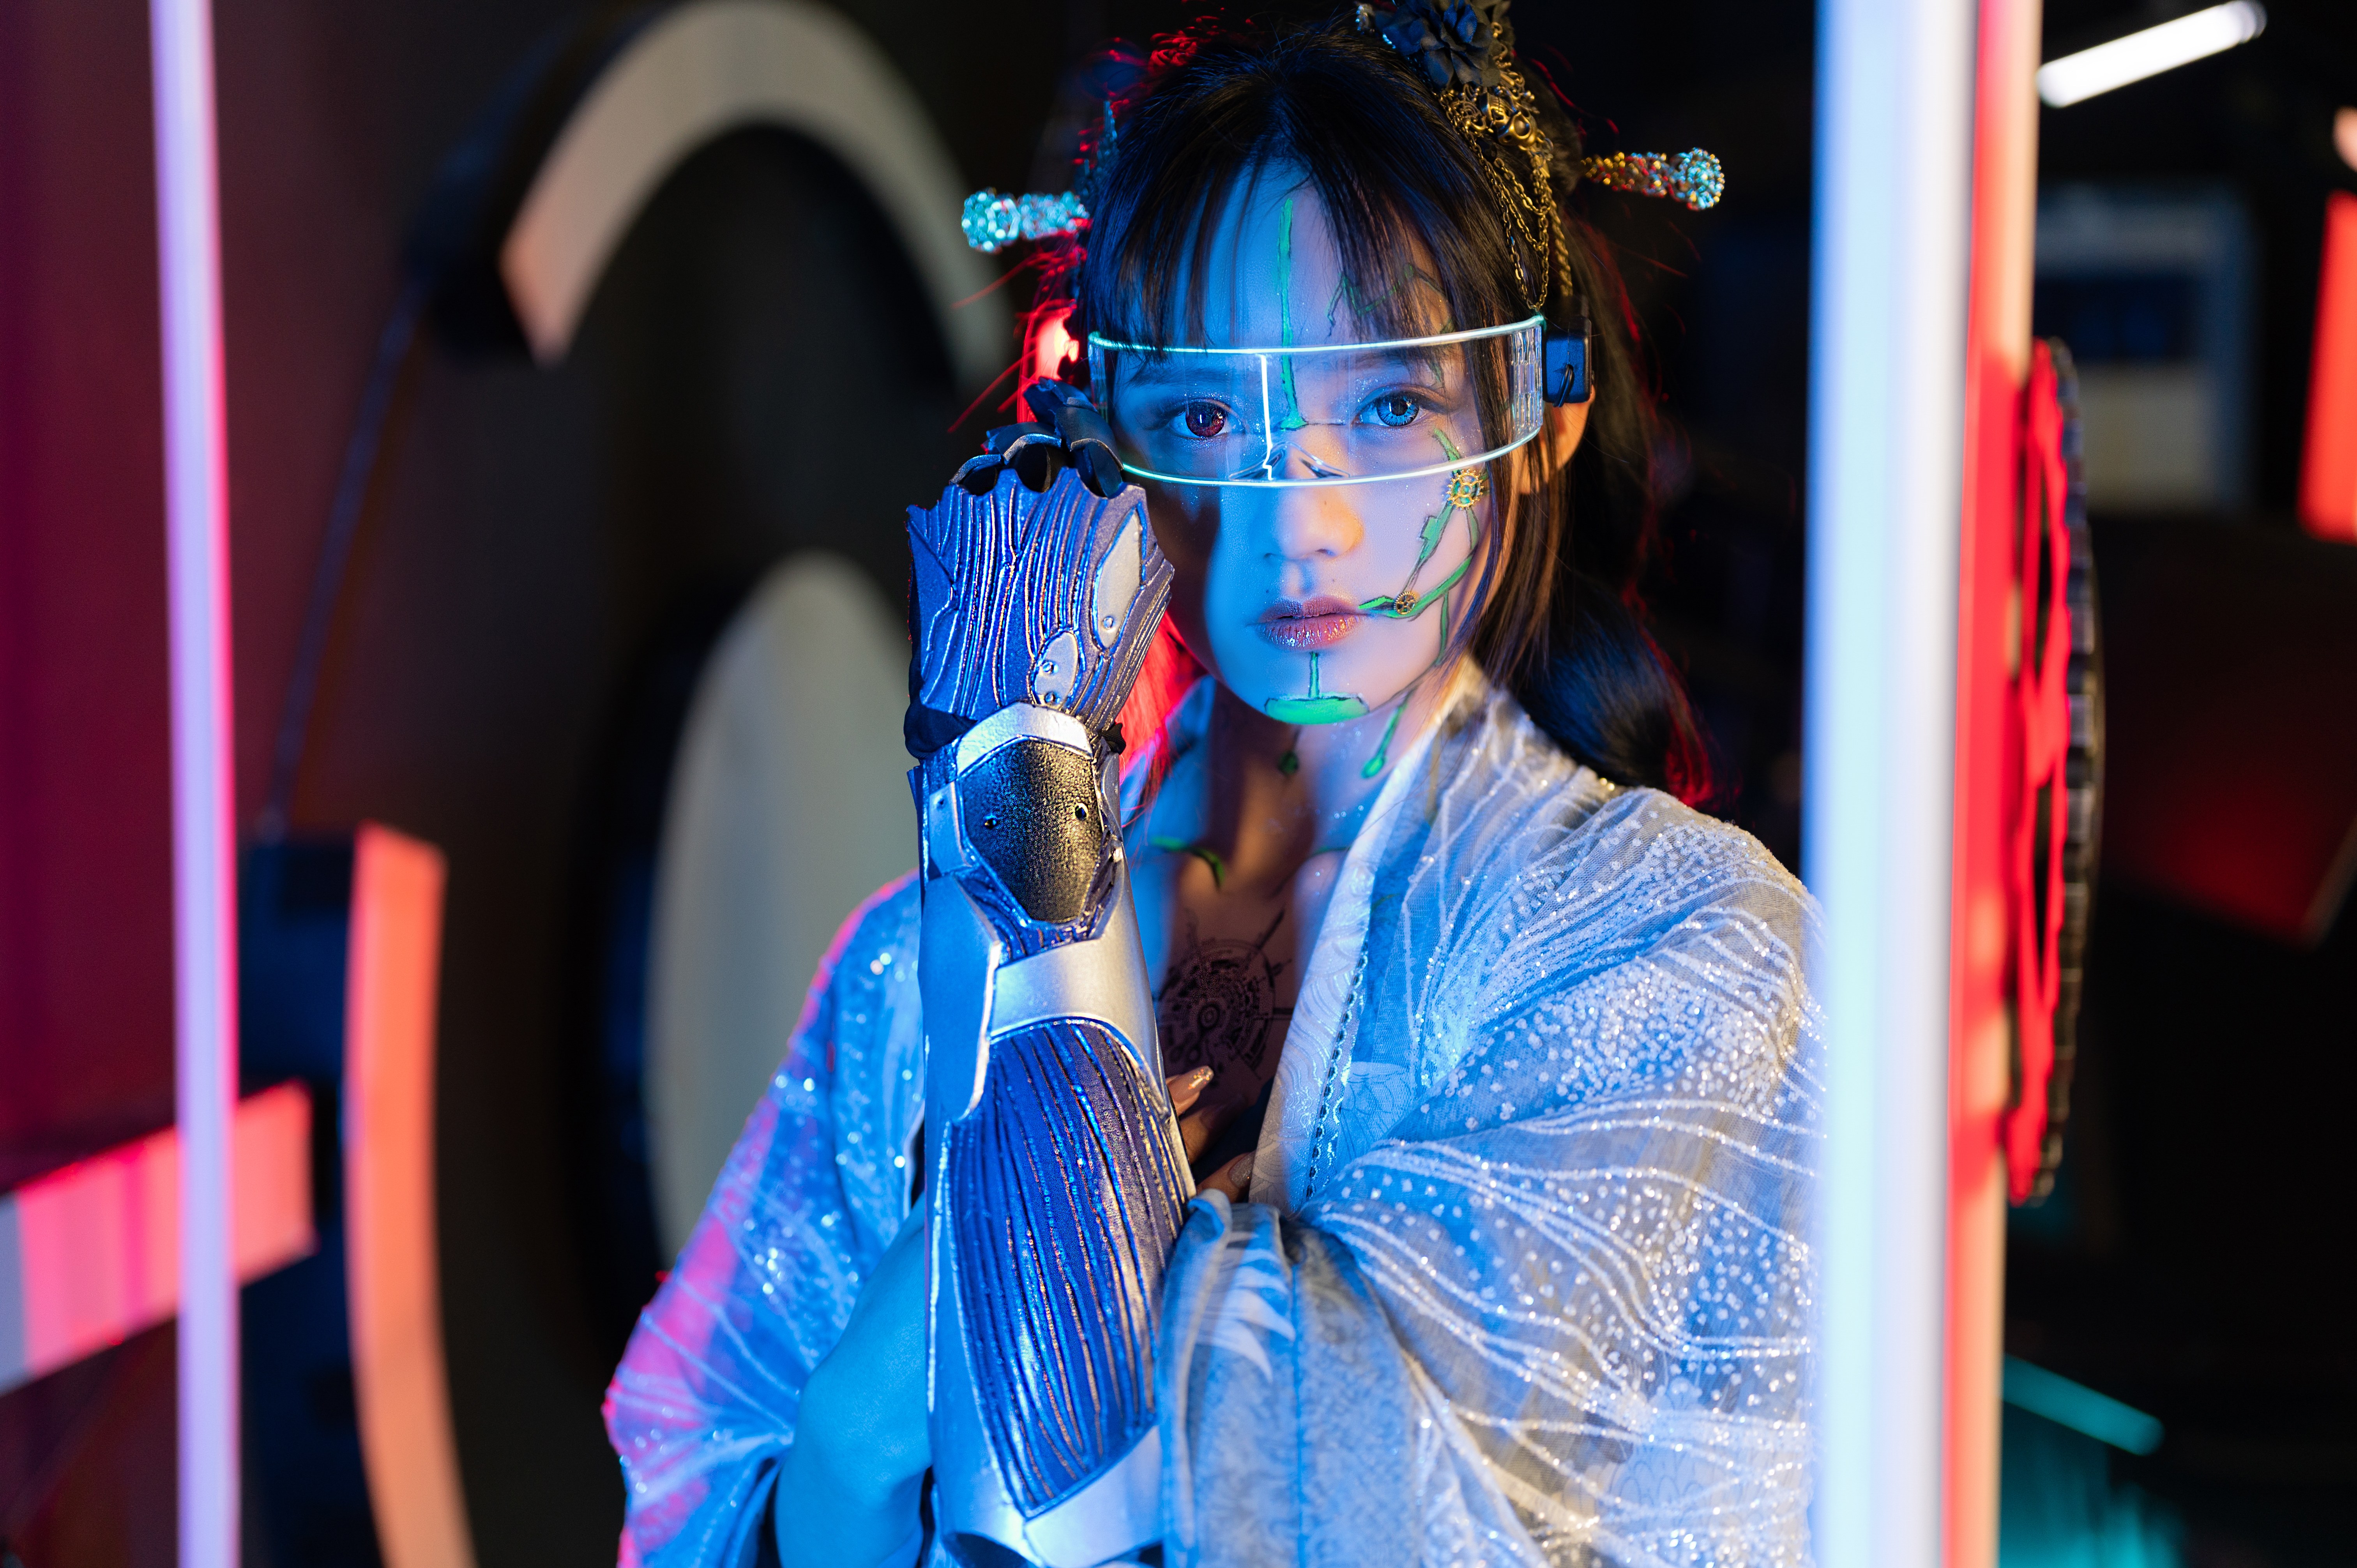 Японская девушка с кибер рукой · бесплатная фотография от Fonwall